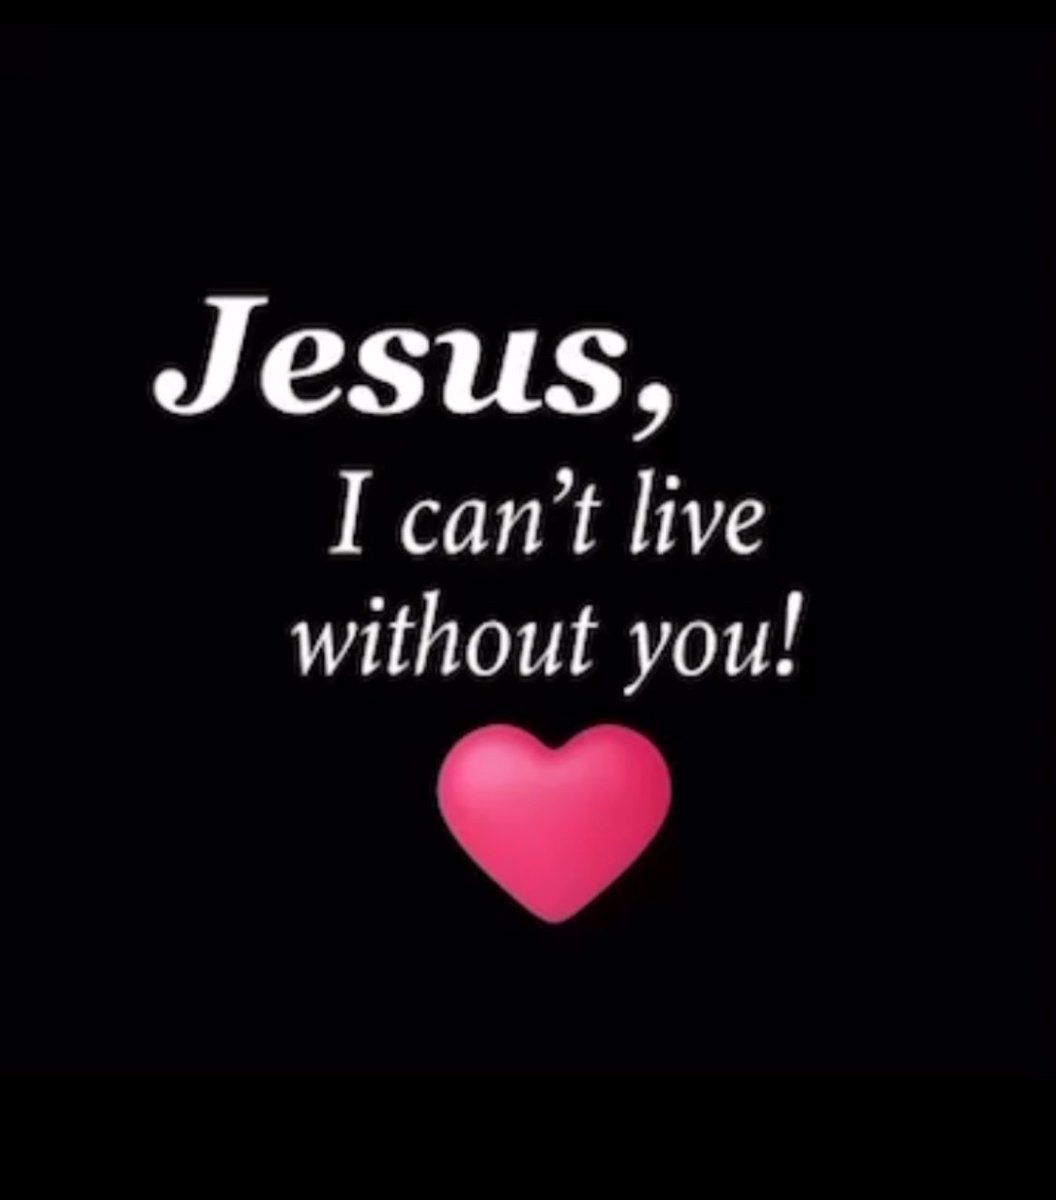 Amen 🙏✝️🤍 

#JesusChrist #JesusLovesYou #GodLovesYou #JesusSaves #GodIsGood